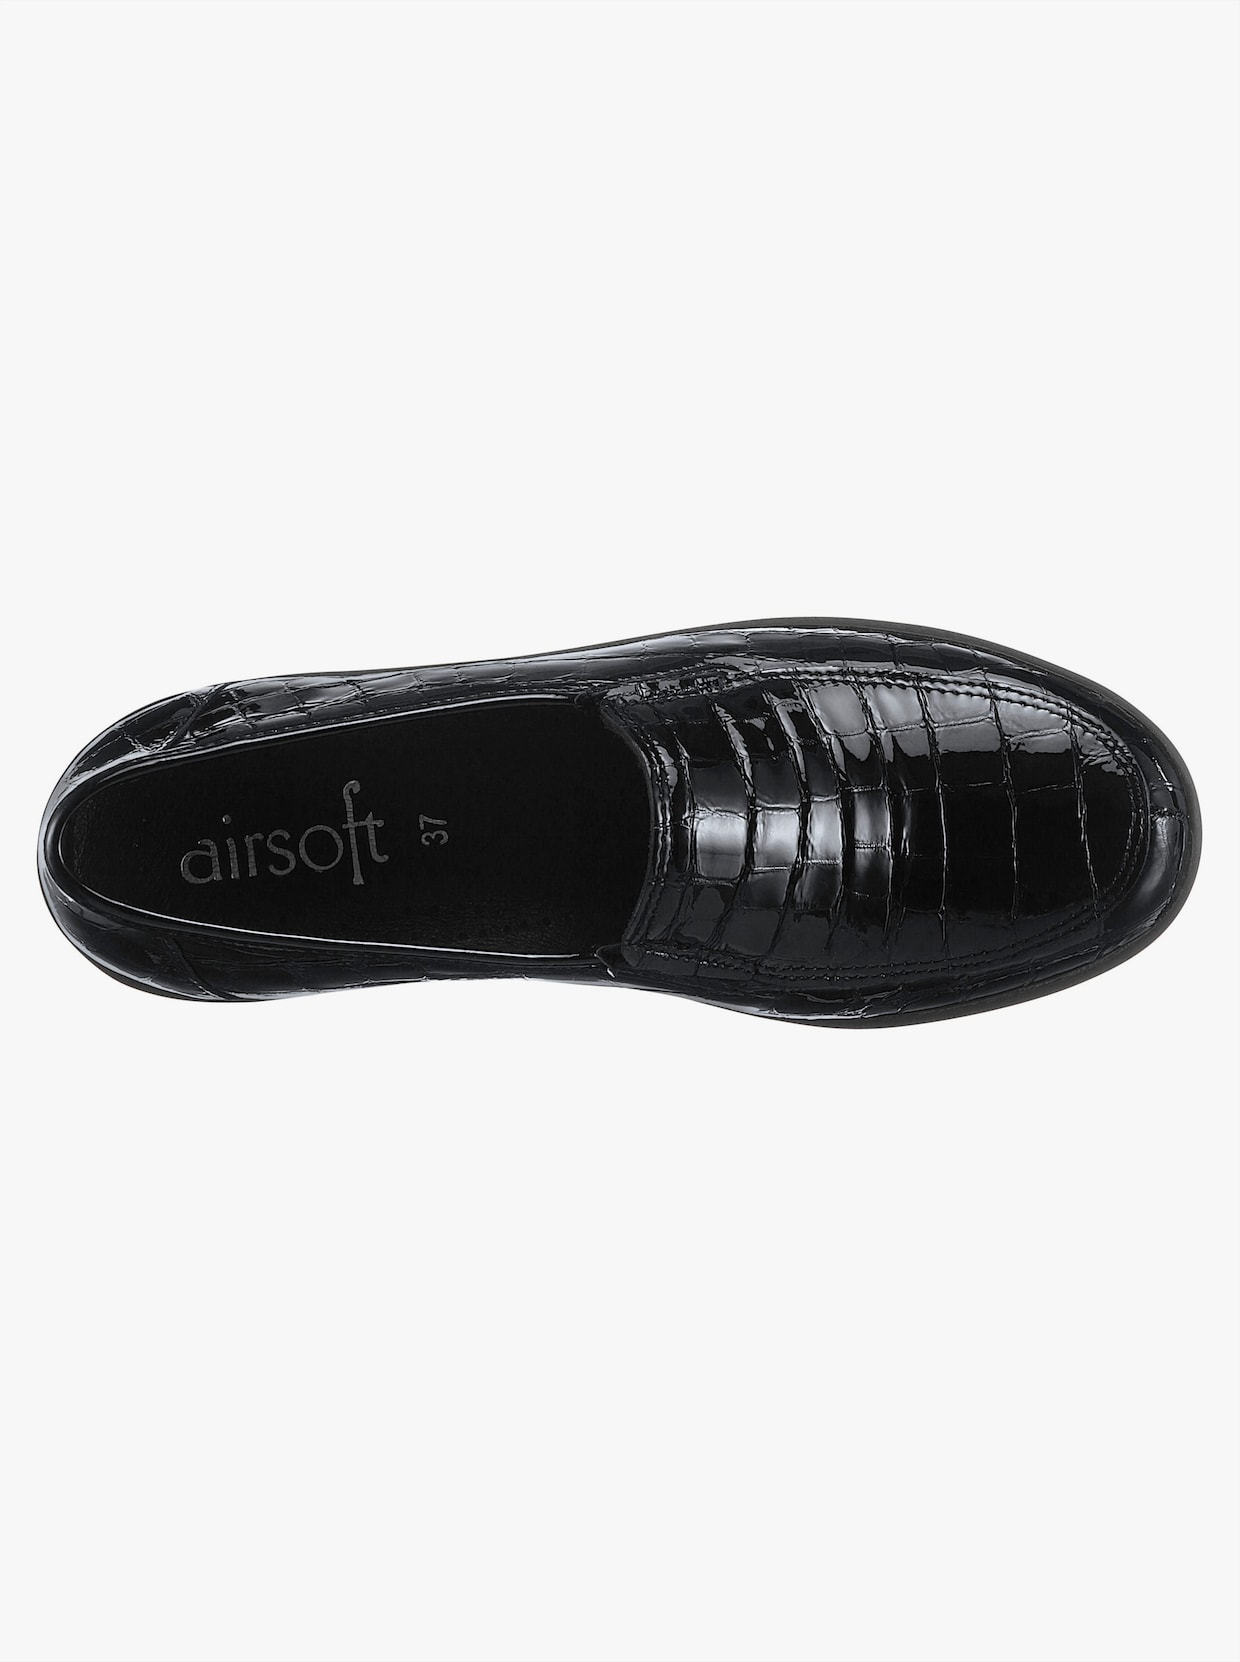 airsoft comfort+ Skor - svart